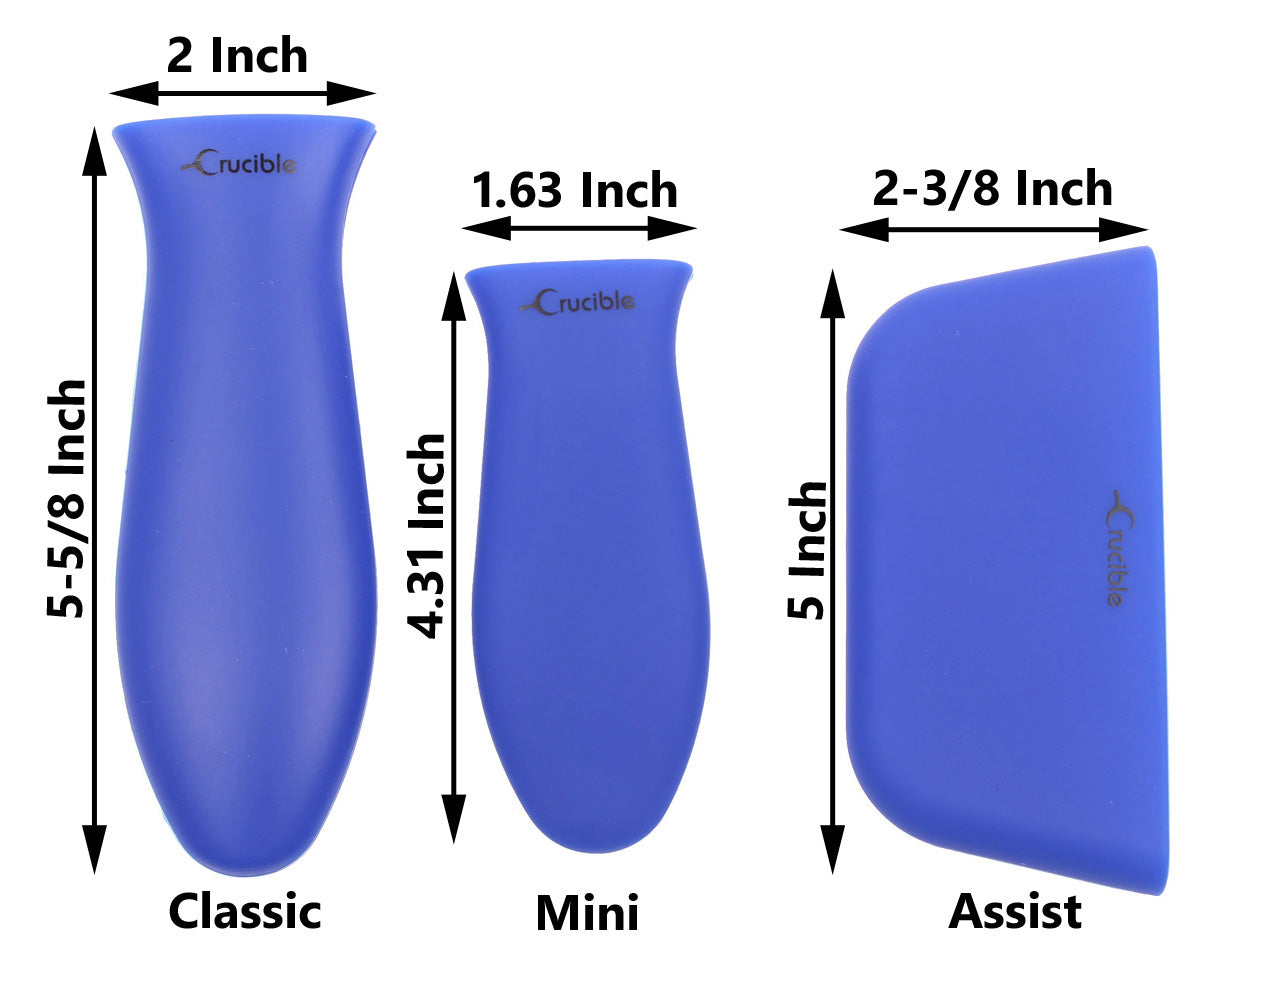 硅胶热手柄支架、隔热垫（3 件装混合蓝色）、套筒握把、手柄套